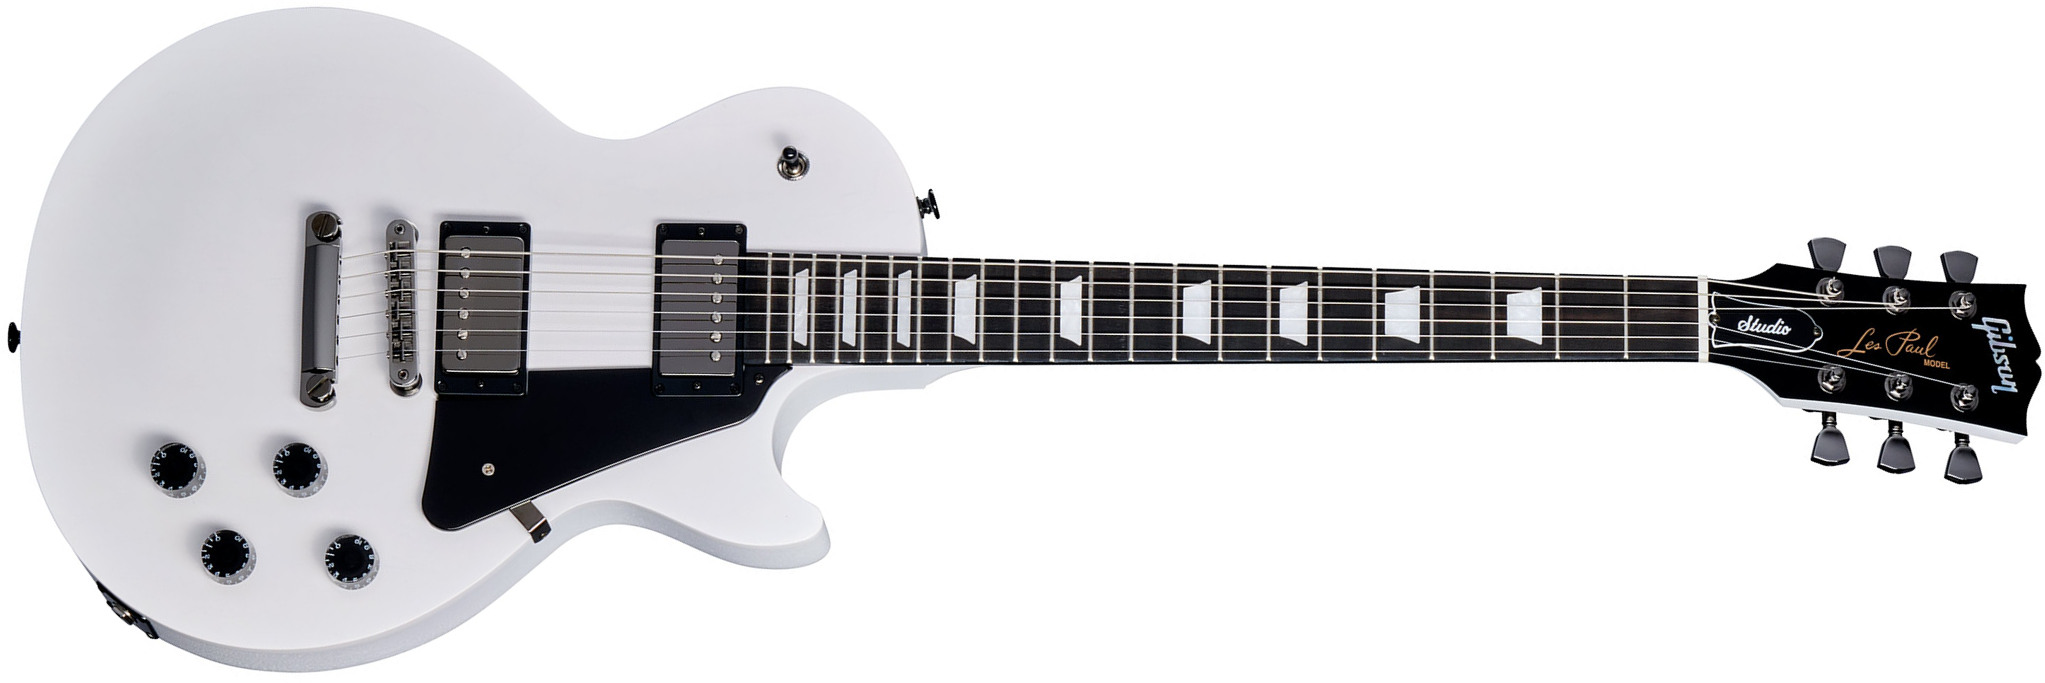 Gibson Les Paul Modern Studio Usa 2h Ht Eb - Worn White - Enkel gesneden elektrische gitaar - Main picture